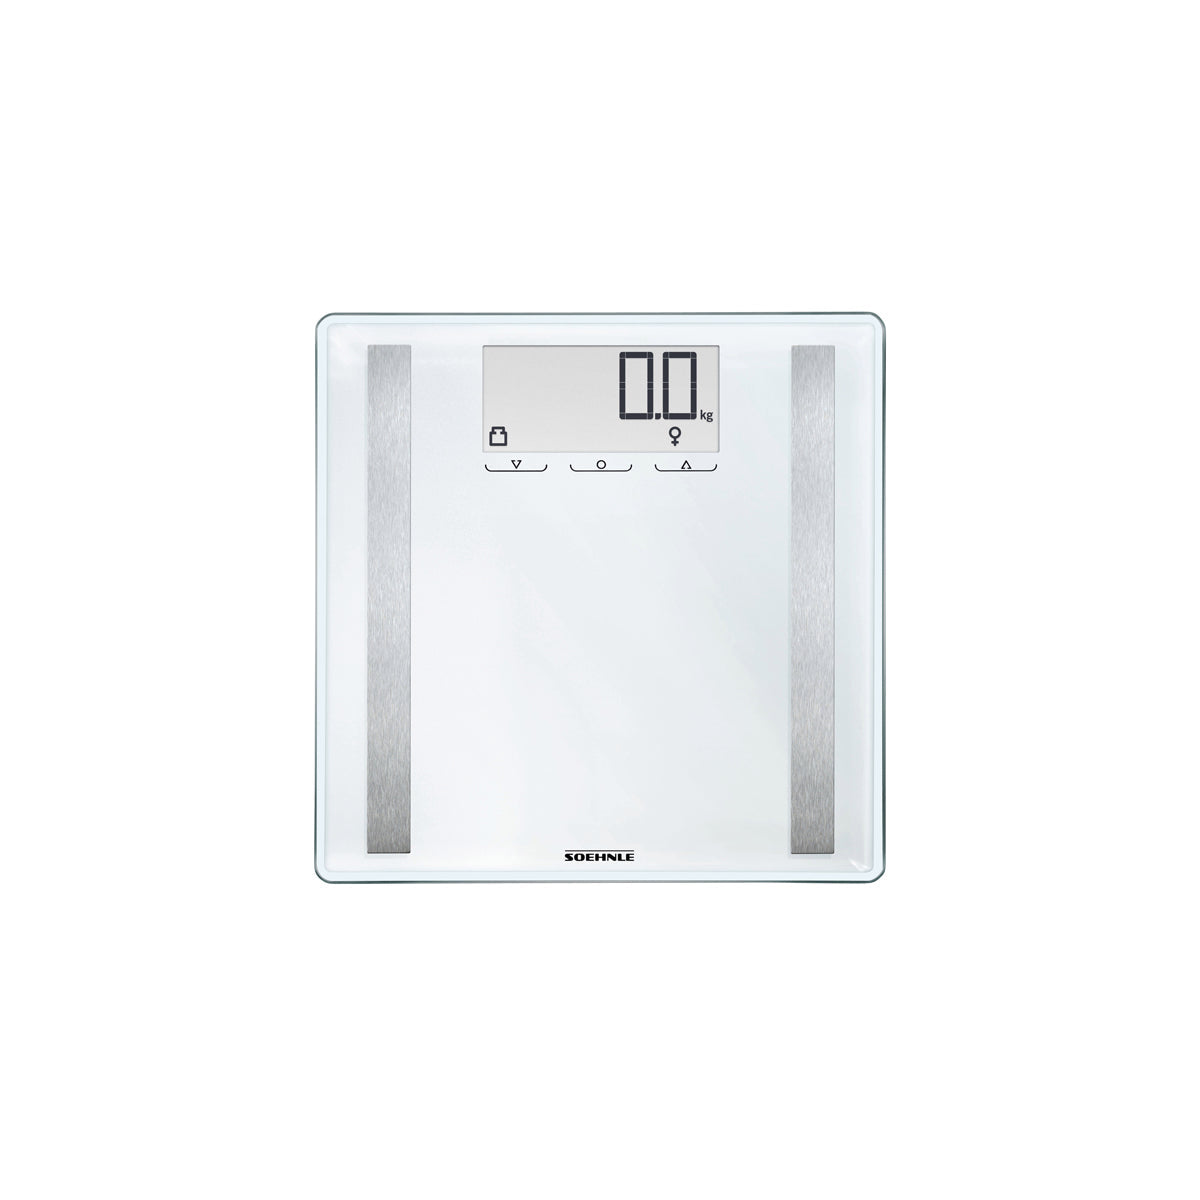 S63858 Soehnle Shape Sense Control 200 Bathroom Scale White 180kg Tomkin Australia Hospitality Supplies